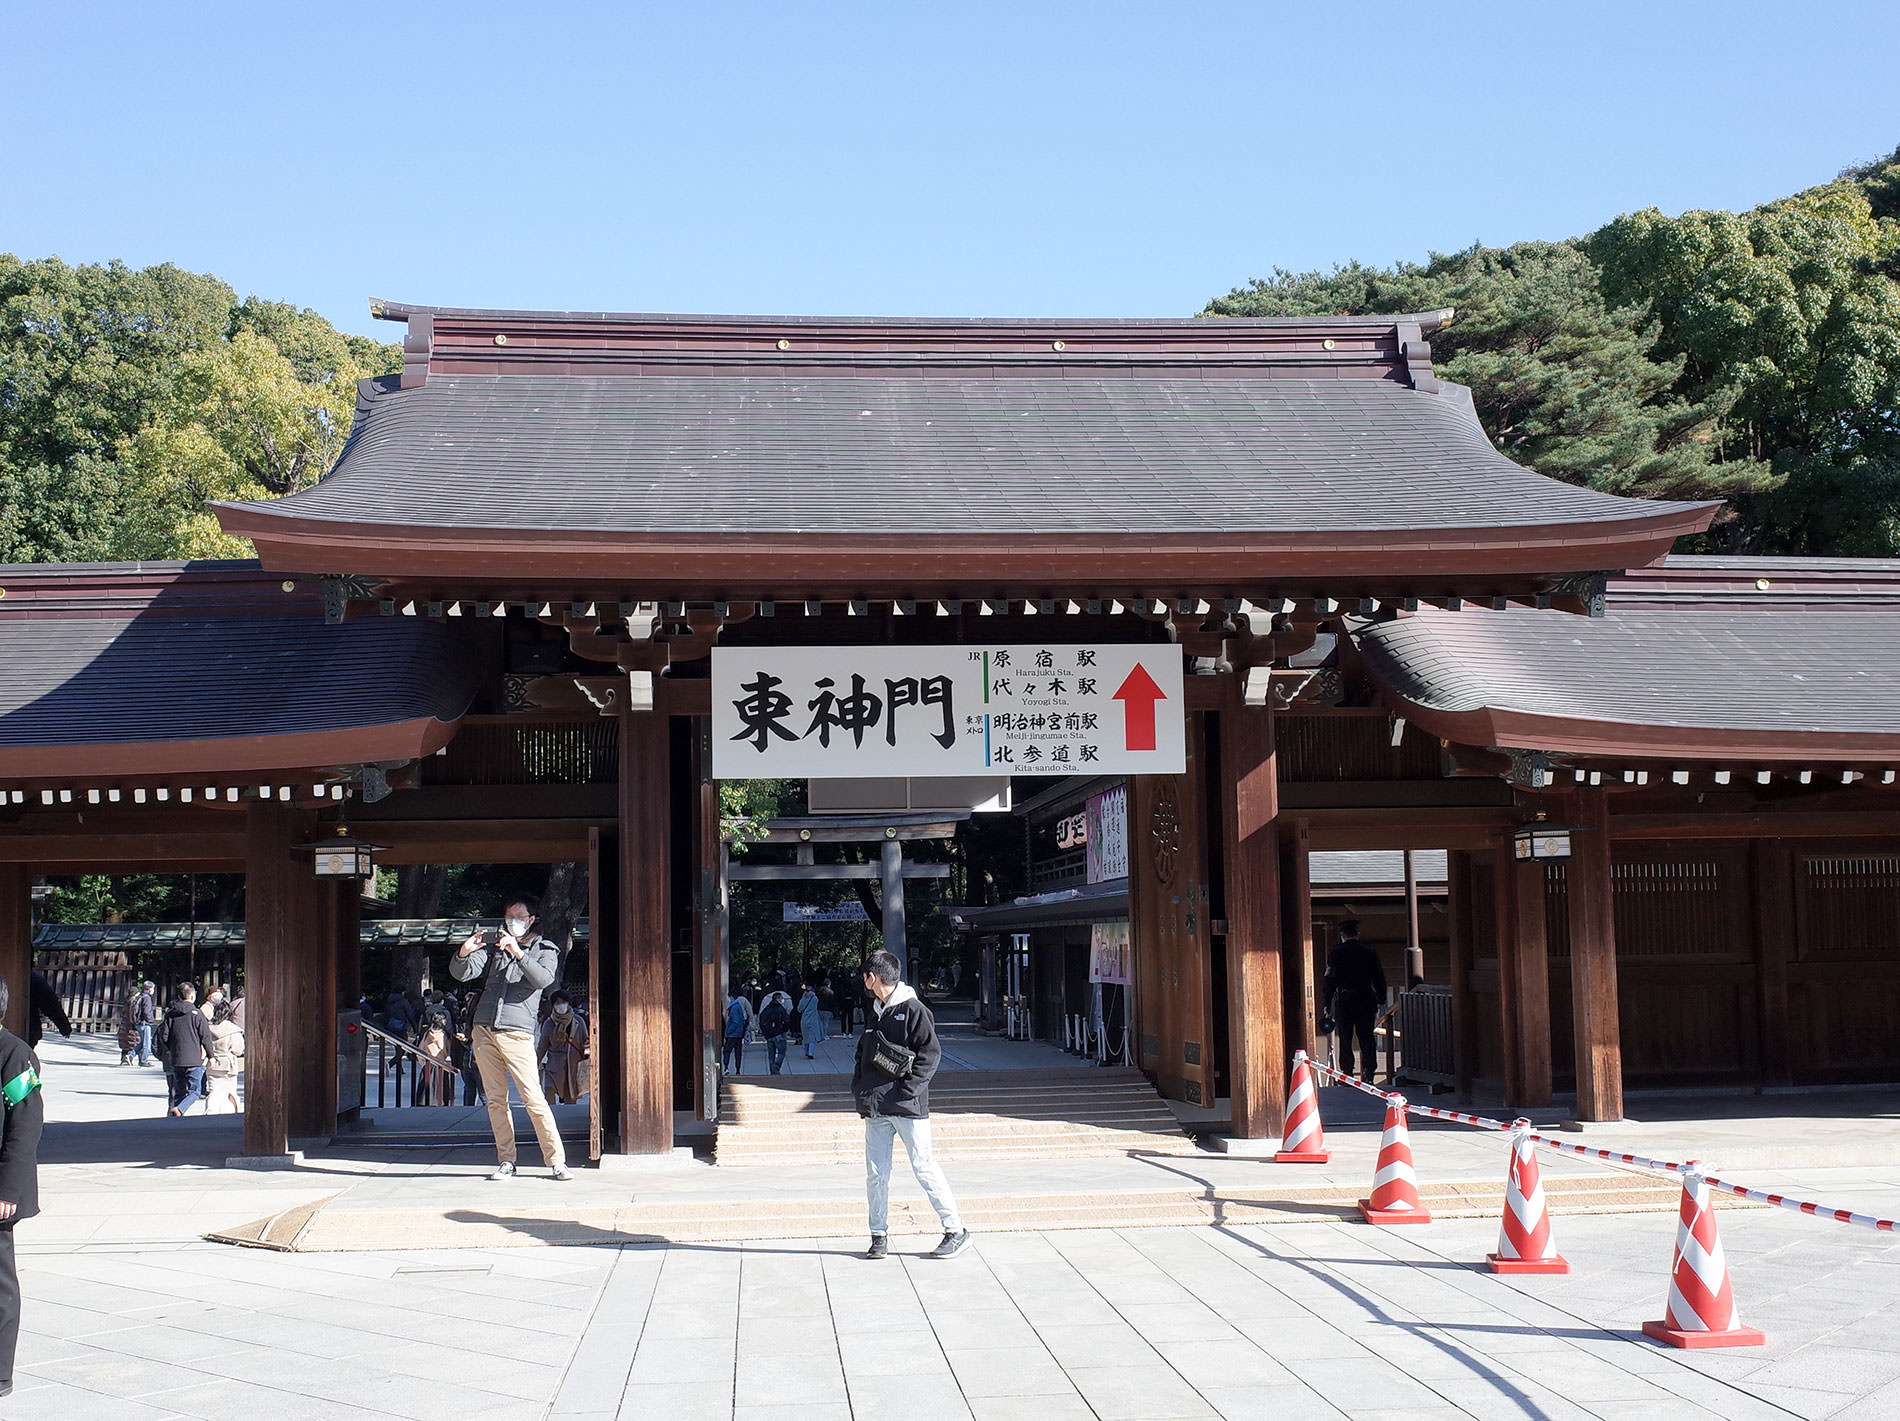 初詣 2022 / The first Tokyo's shrine visit of 2022